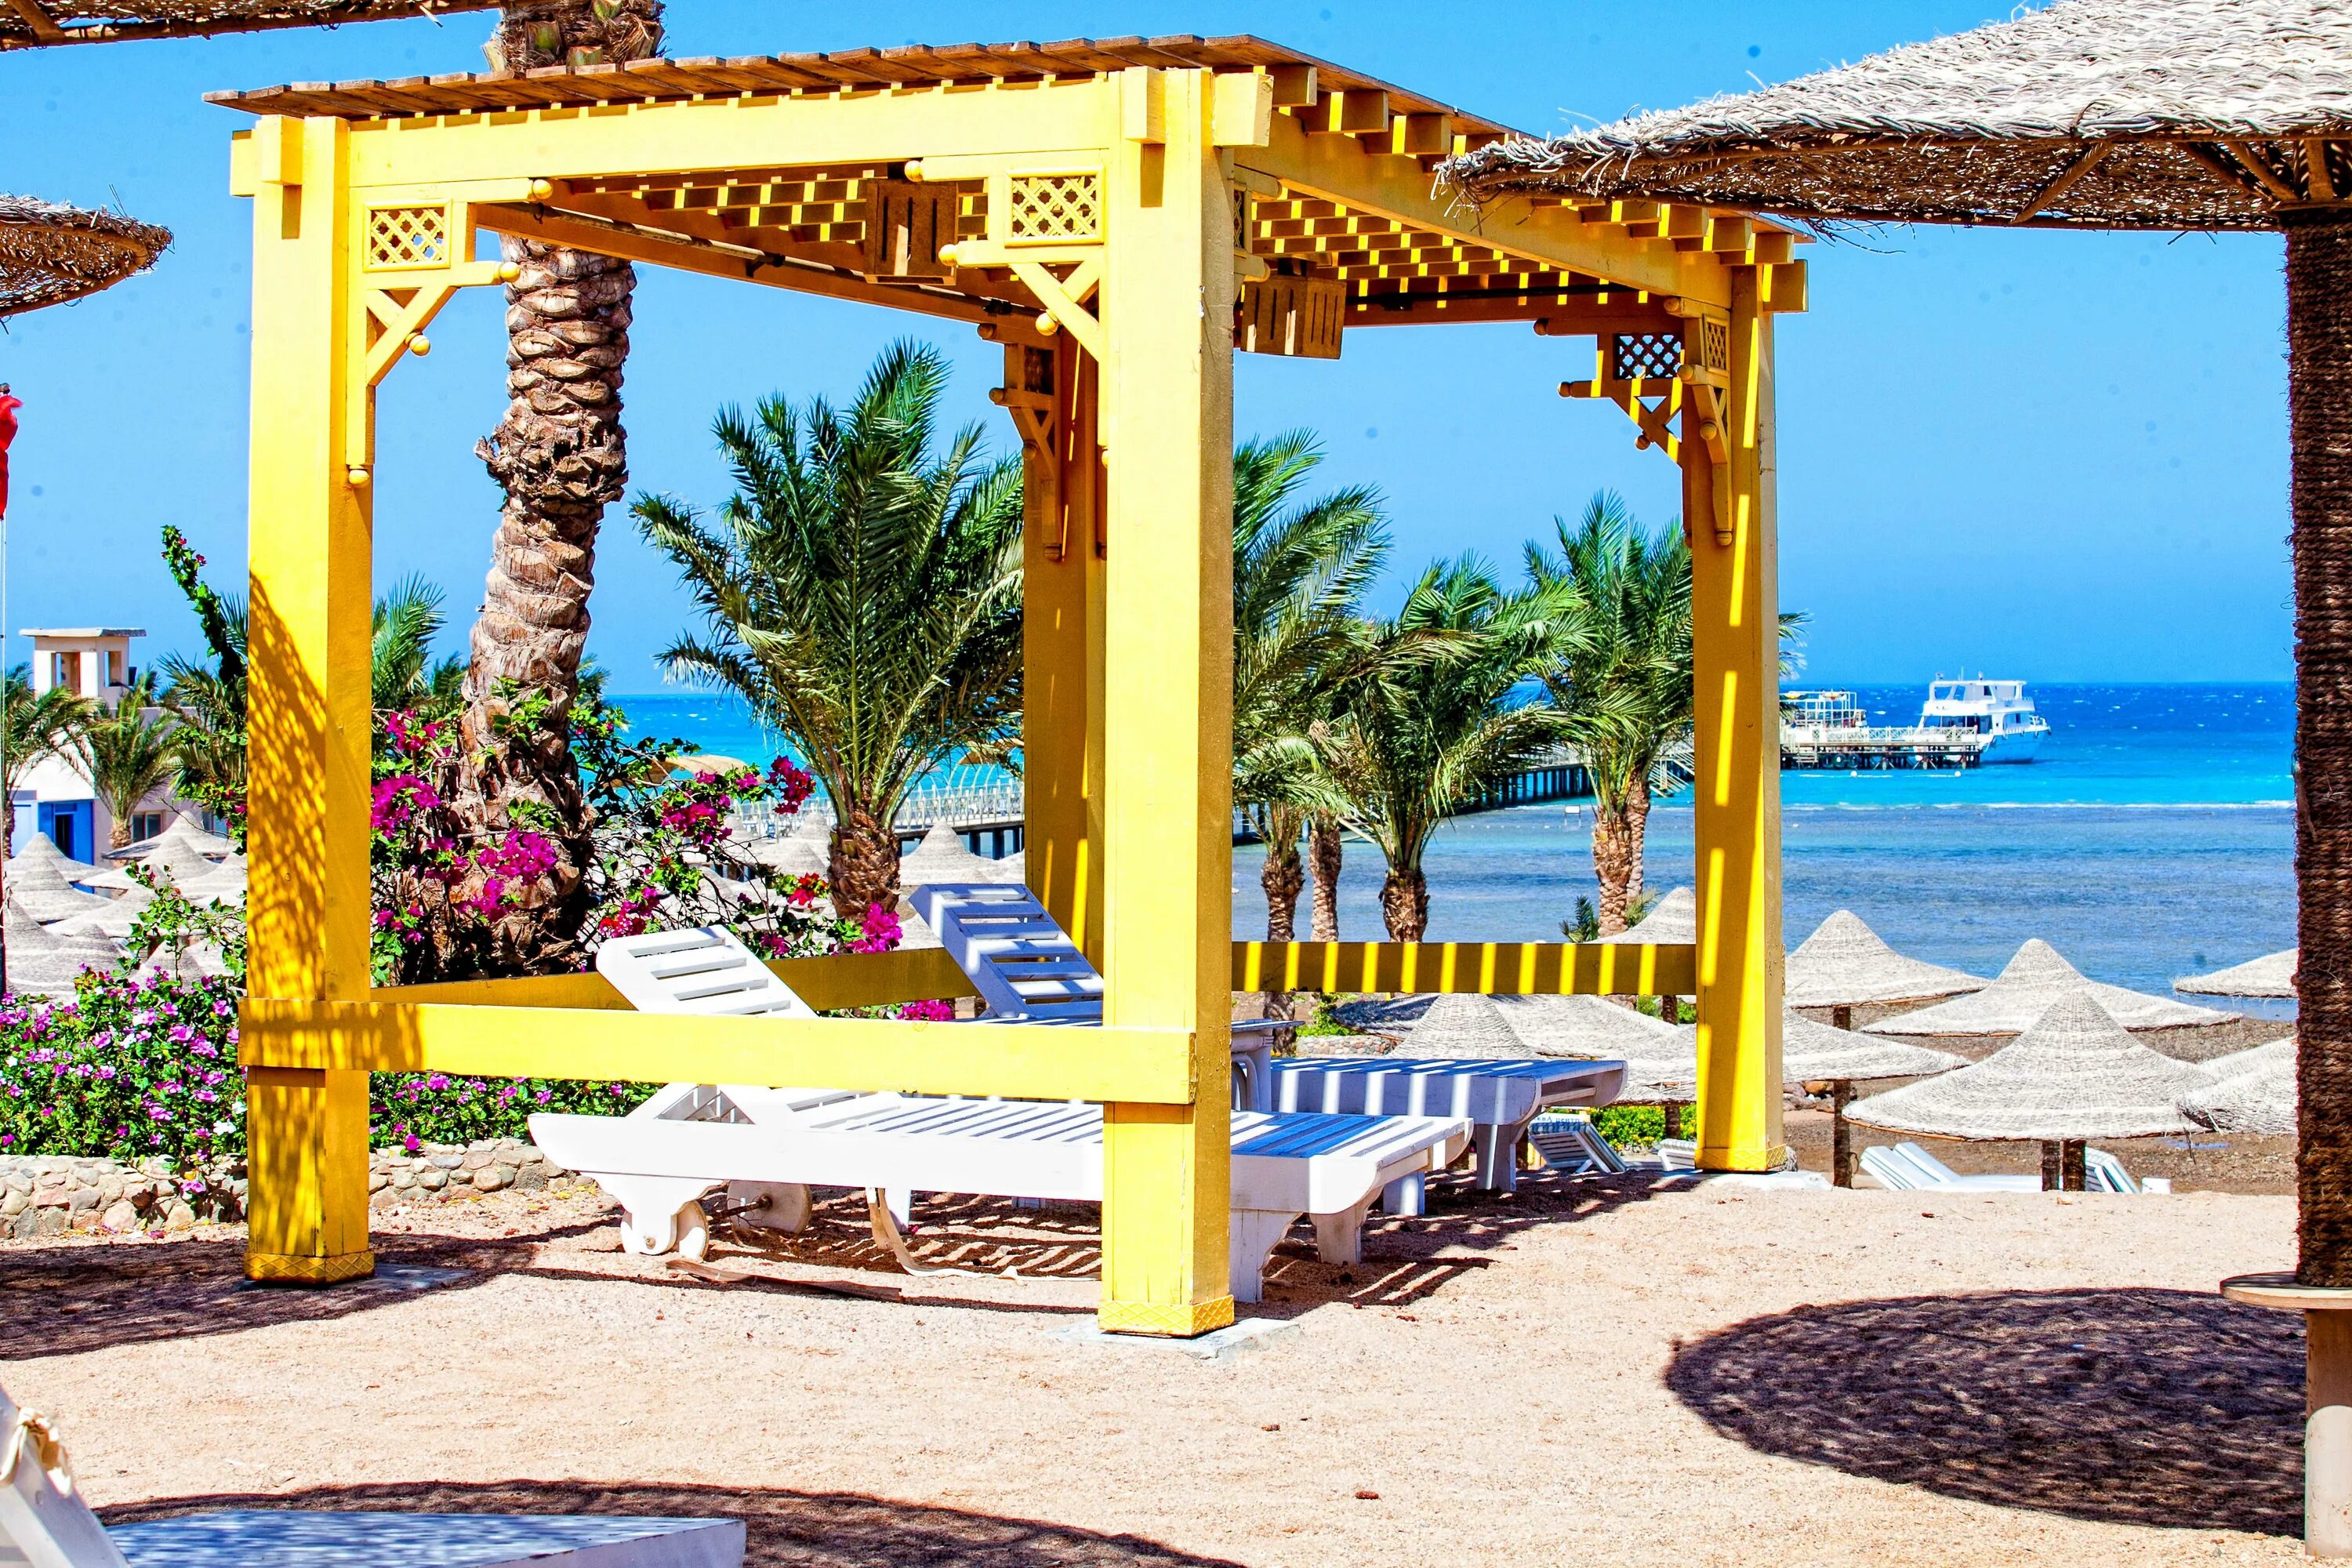 Египет,Хургада,Nubia Aqua Beach Resort. Нубия Аква Бич Резорт 4. Nubia Aqua Resort 5 Египет Хургада. Нубия Египет отель. El karma aqua beach resort египет